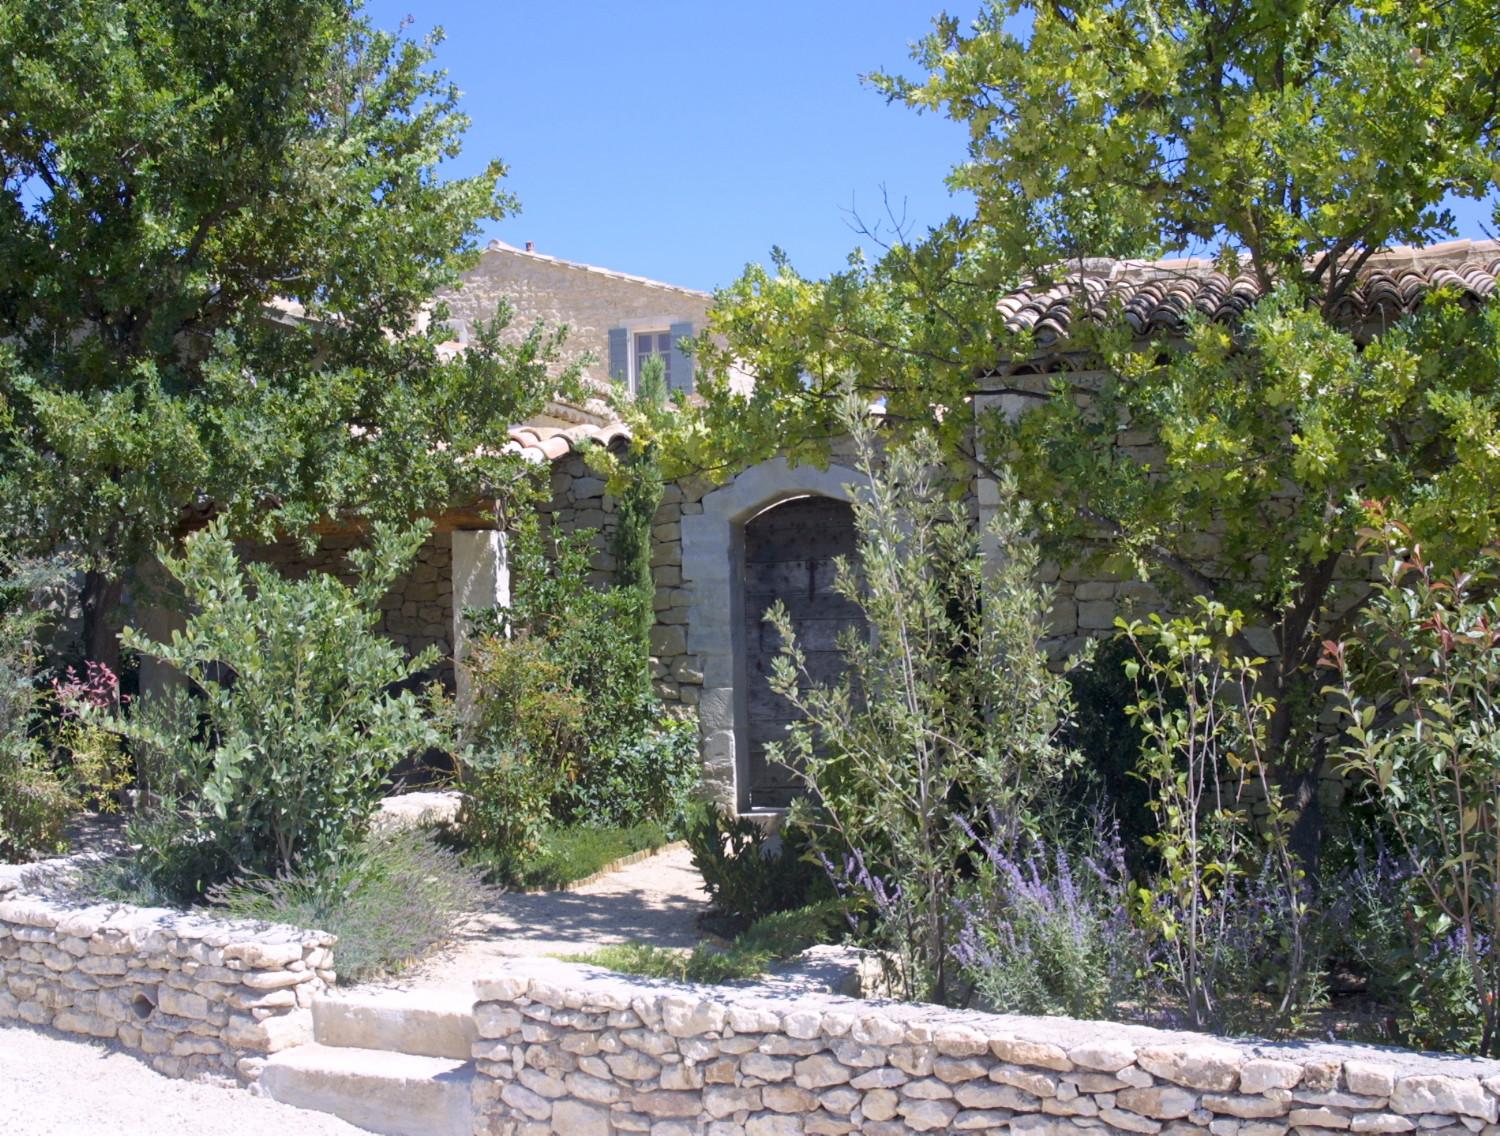 praktijk in stand houden uitvoeren Gardens : Mediteranean gardens and plants - A. Nelson Architect, Landscape  in Provence, France